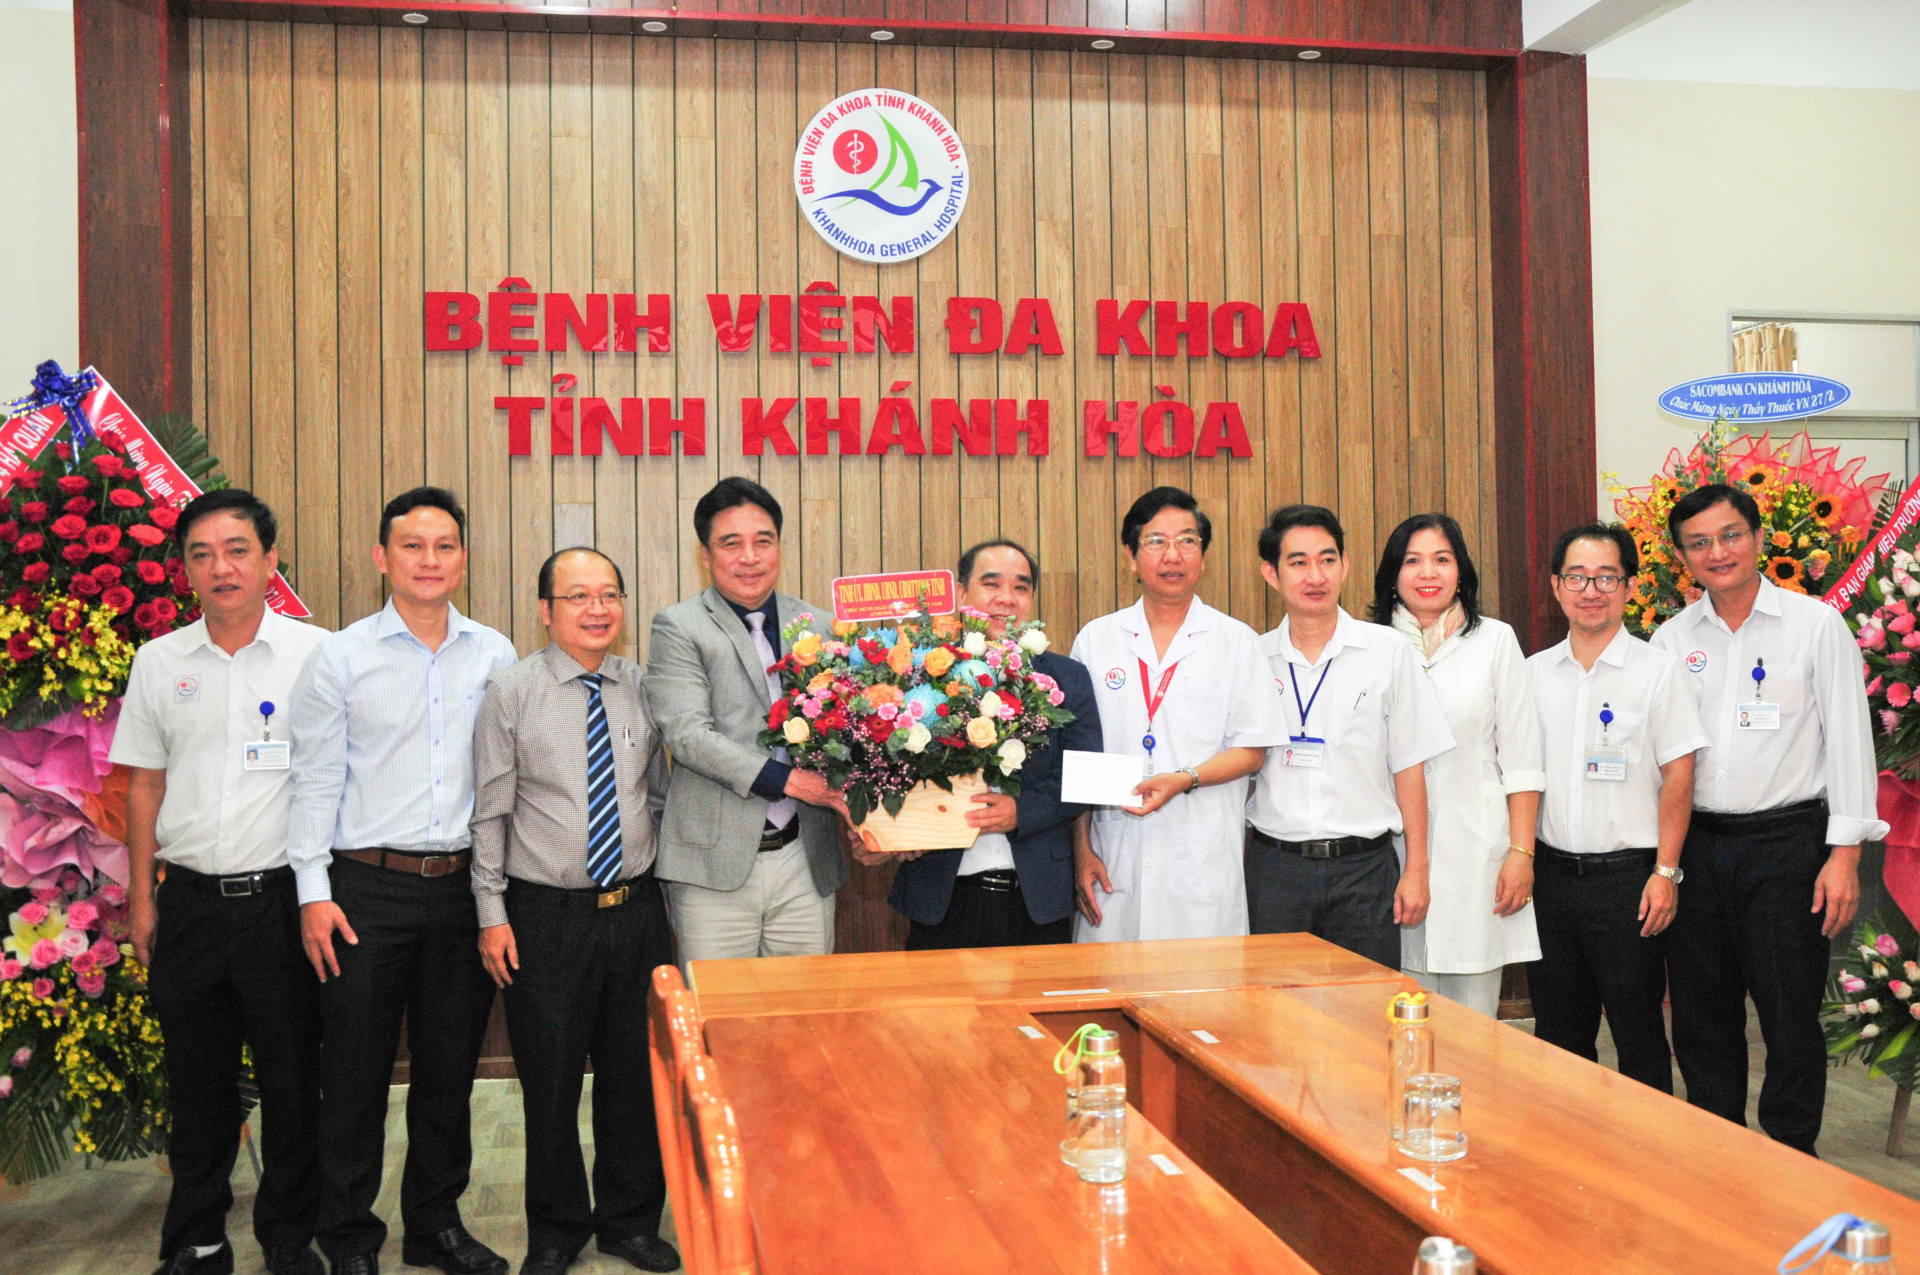 Đồng chí Nguyễn Khắc Toàn tặng hoa và quà chúc mừng Bệnh viện Đa khoa tỉnh